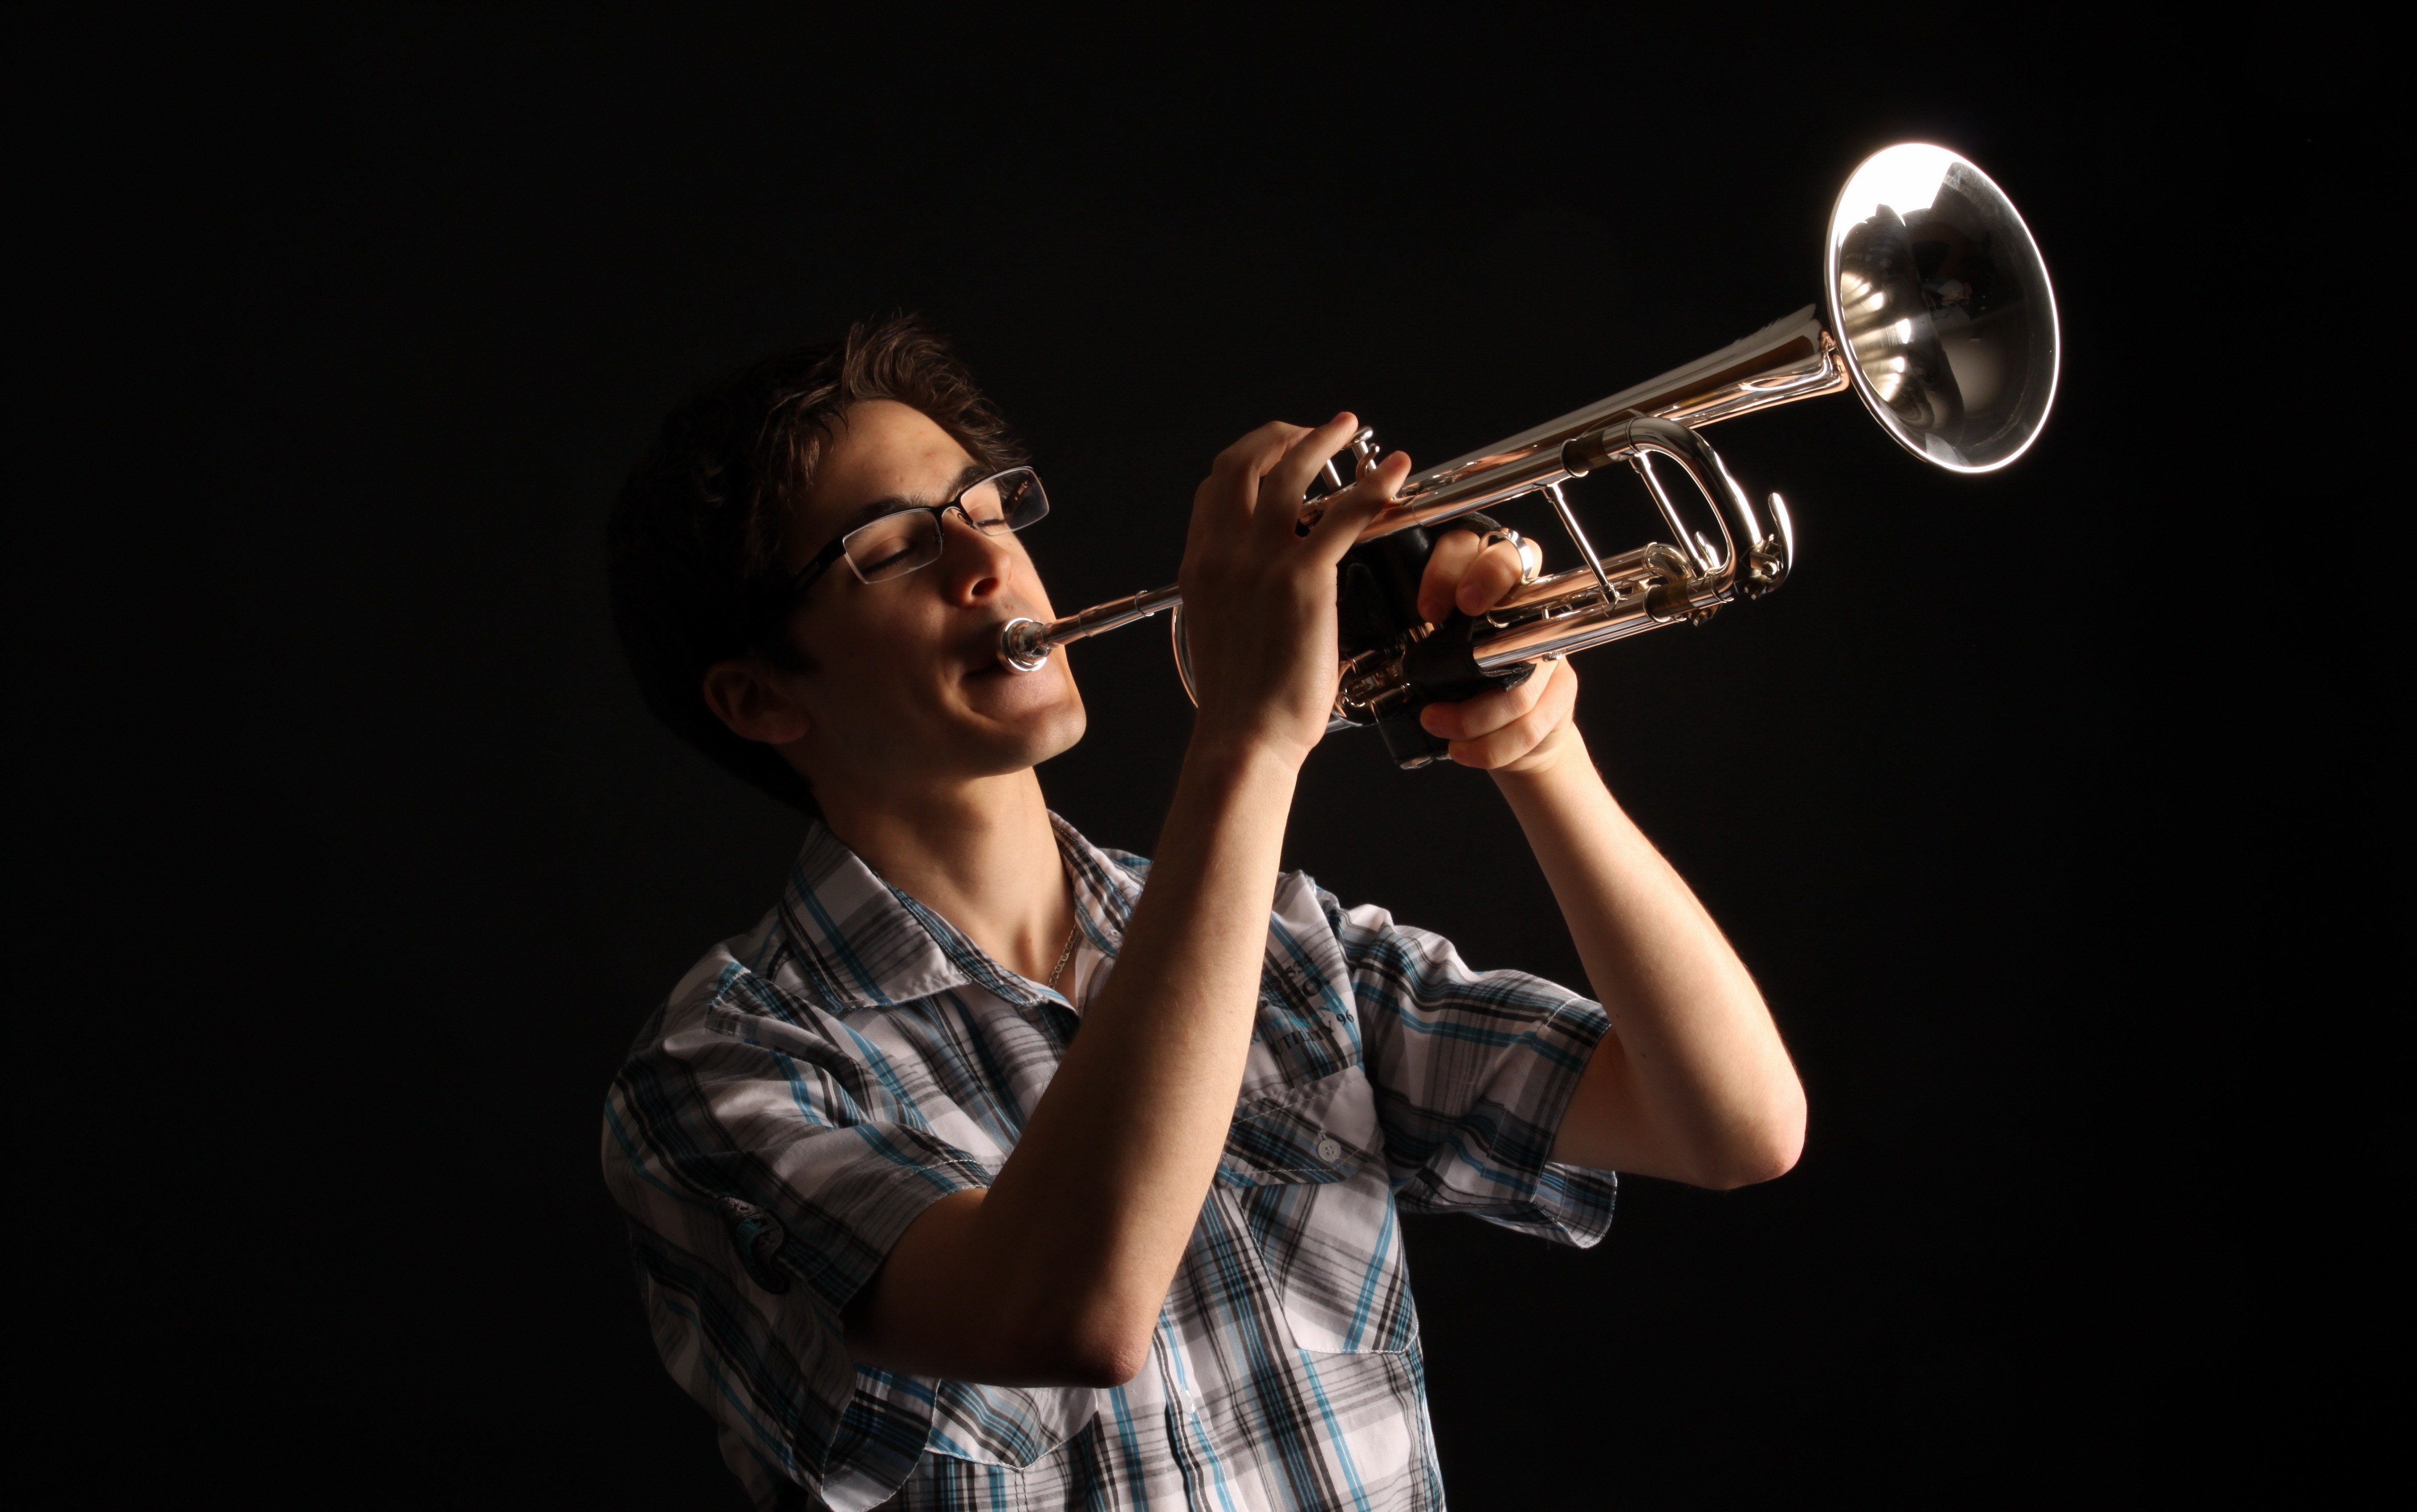 Веселые песни труба. Человек с музыкальным инструментом. Играющий на трубе. Музыкальный инструмент "труба". Человек играющий на трубе.